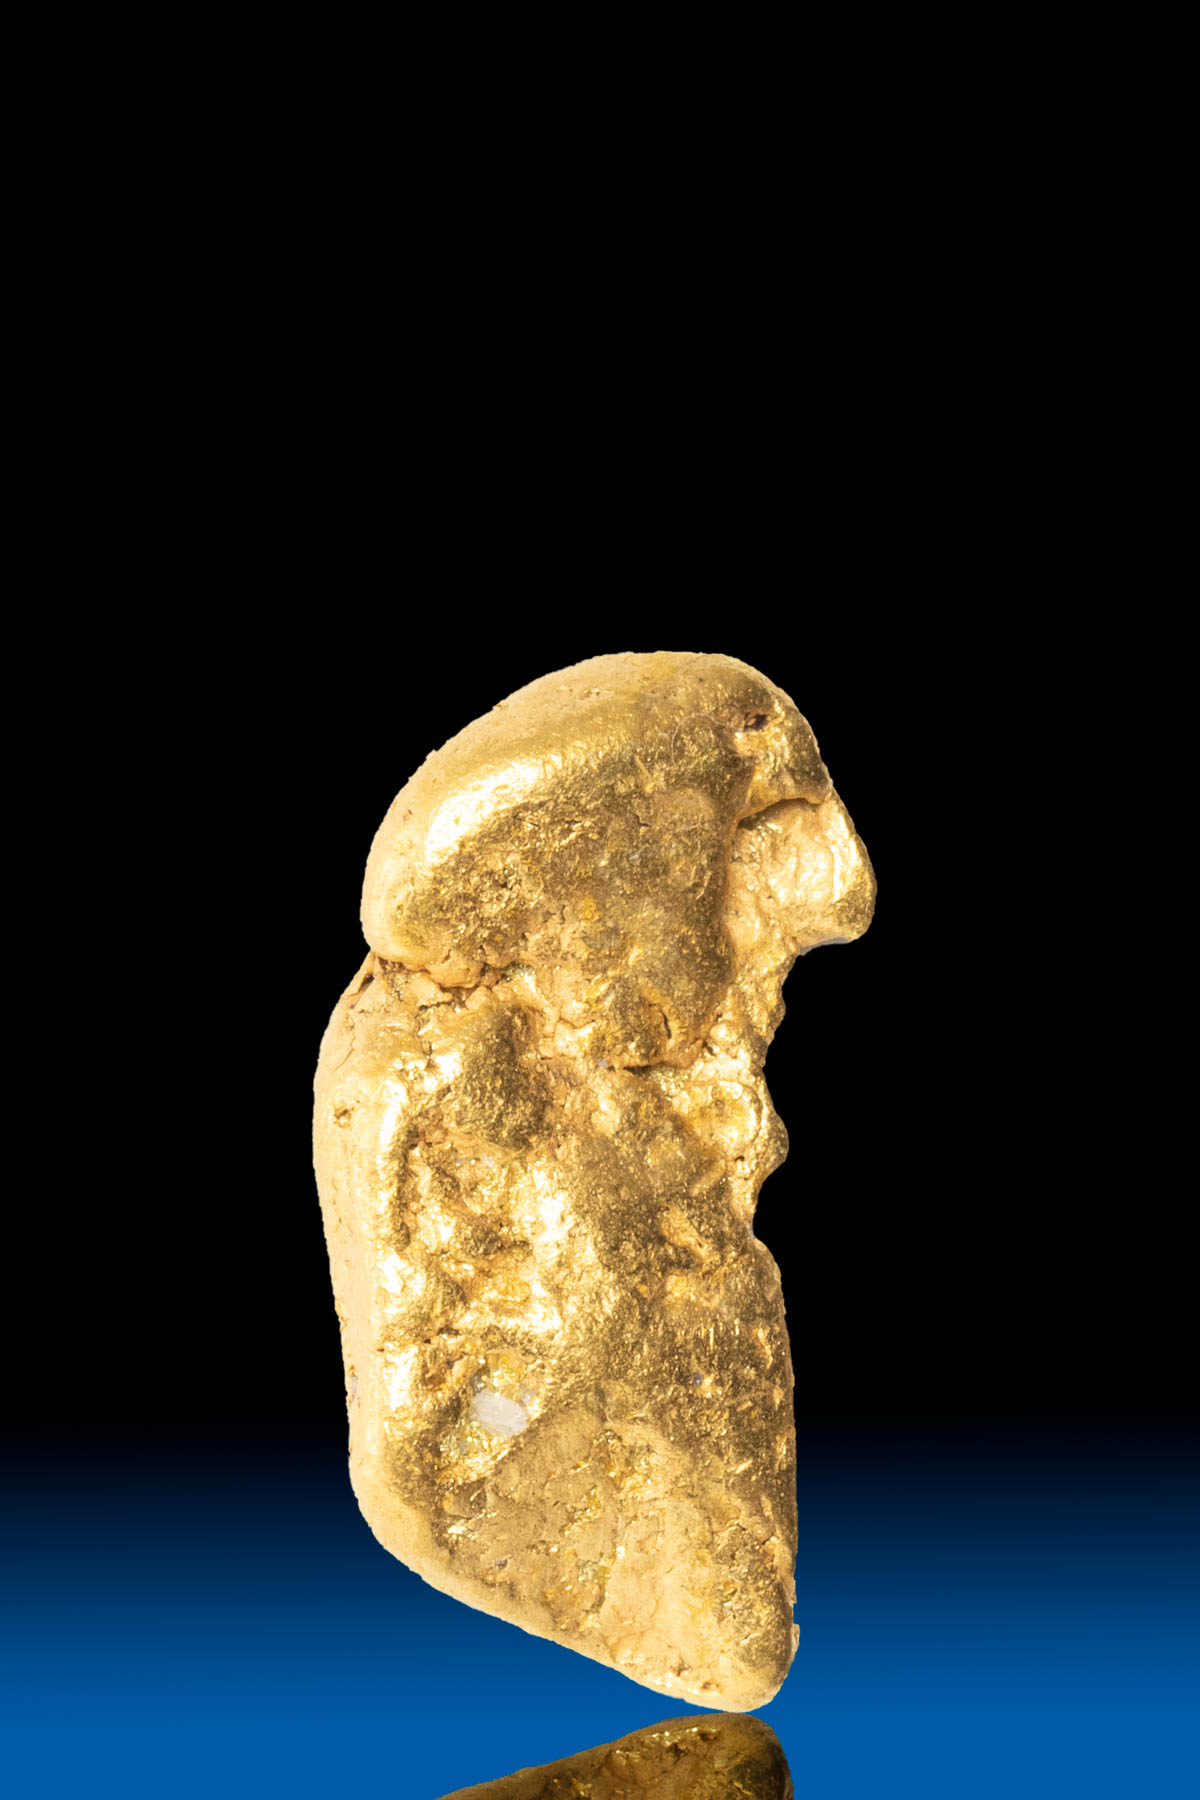 Long Yukon Natural Gold Nugget - 4.45 grams